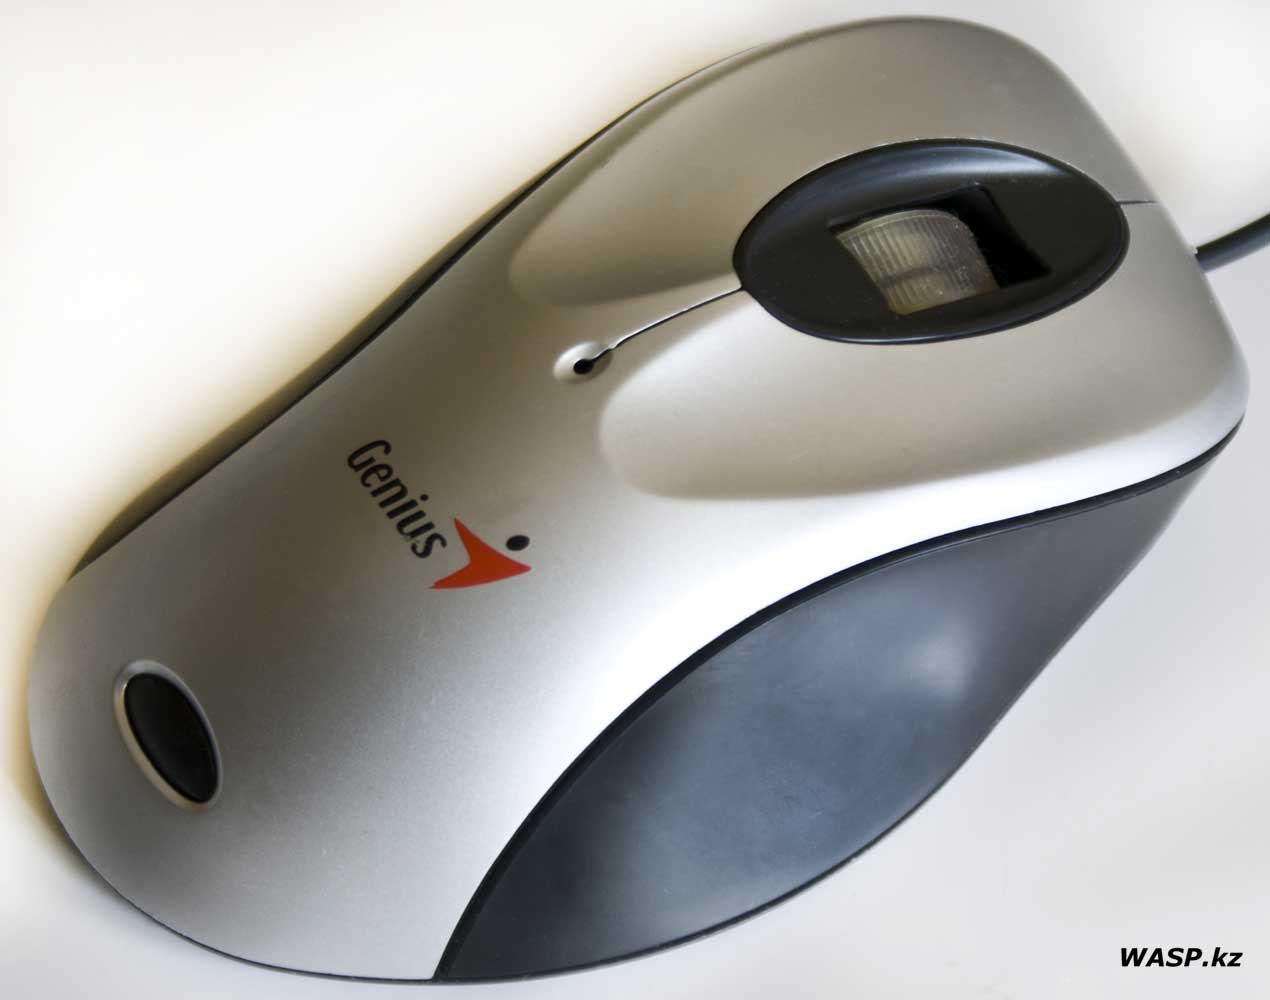 Genius 3D Optical Mouse описание проводной мыши